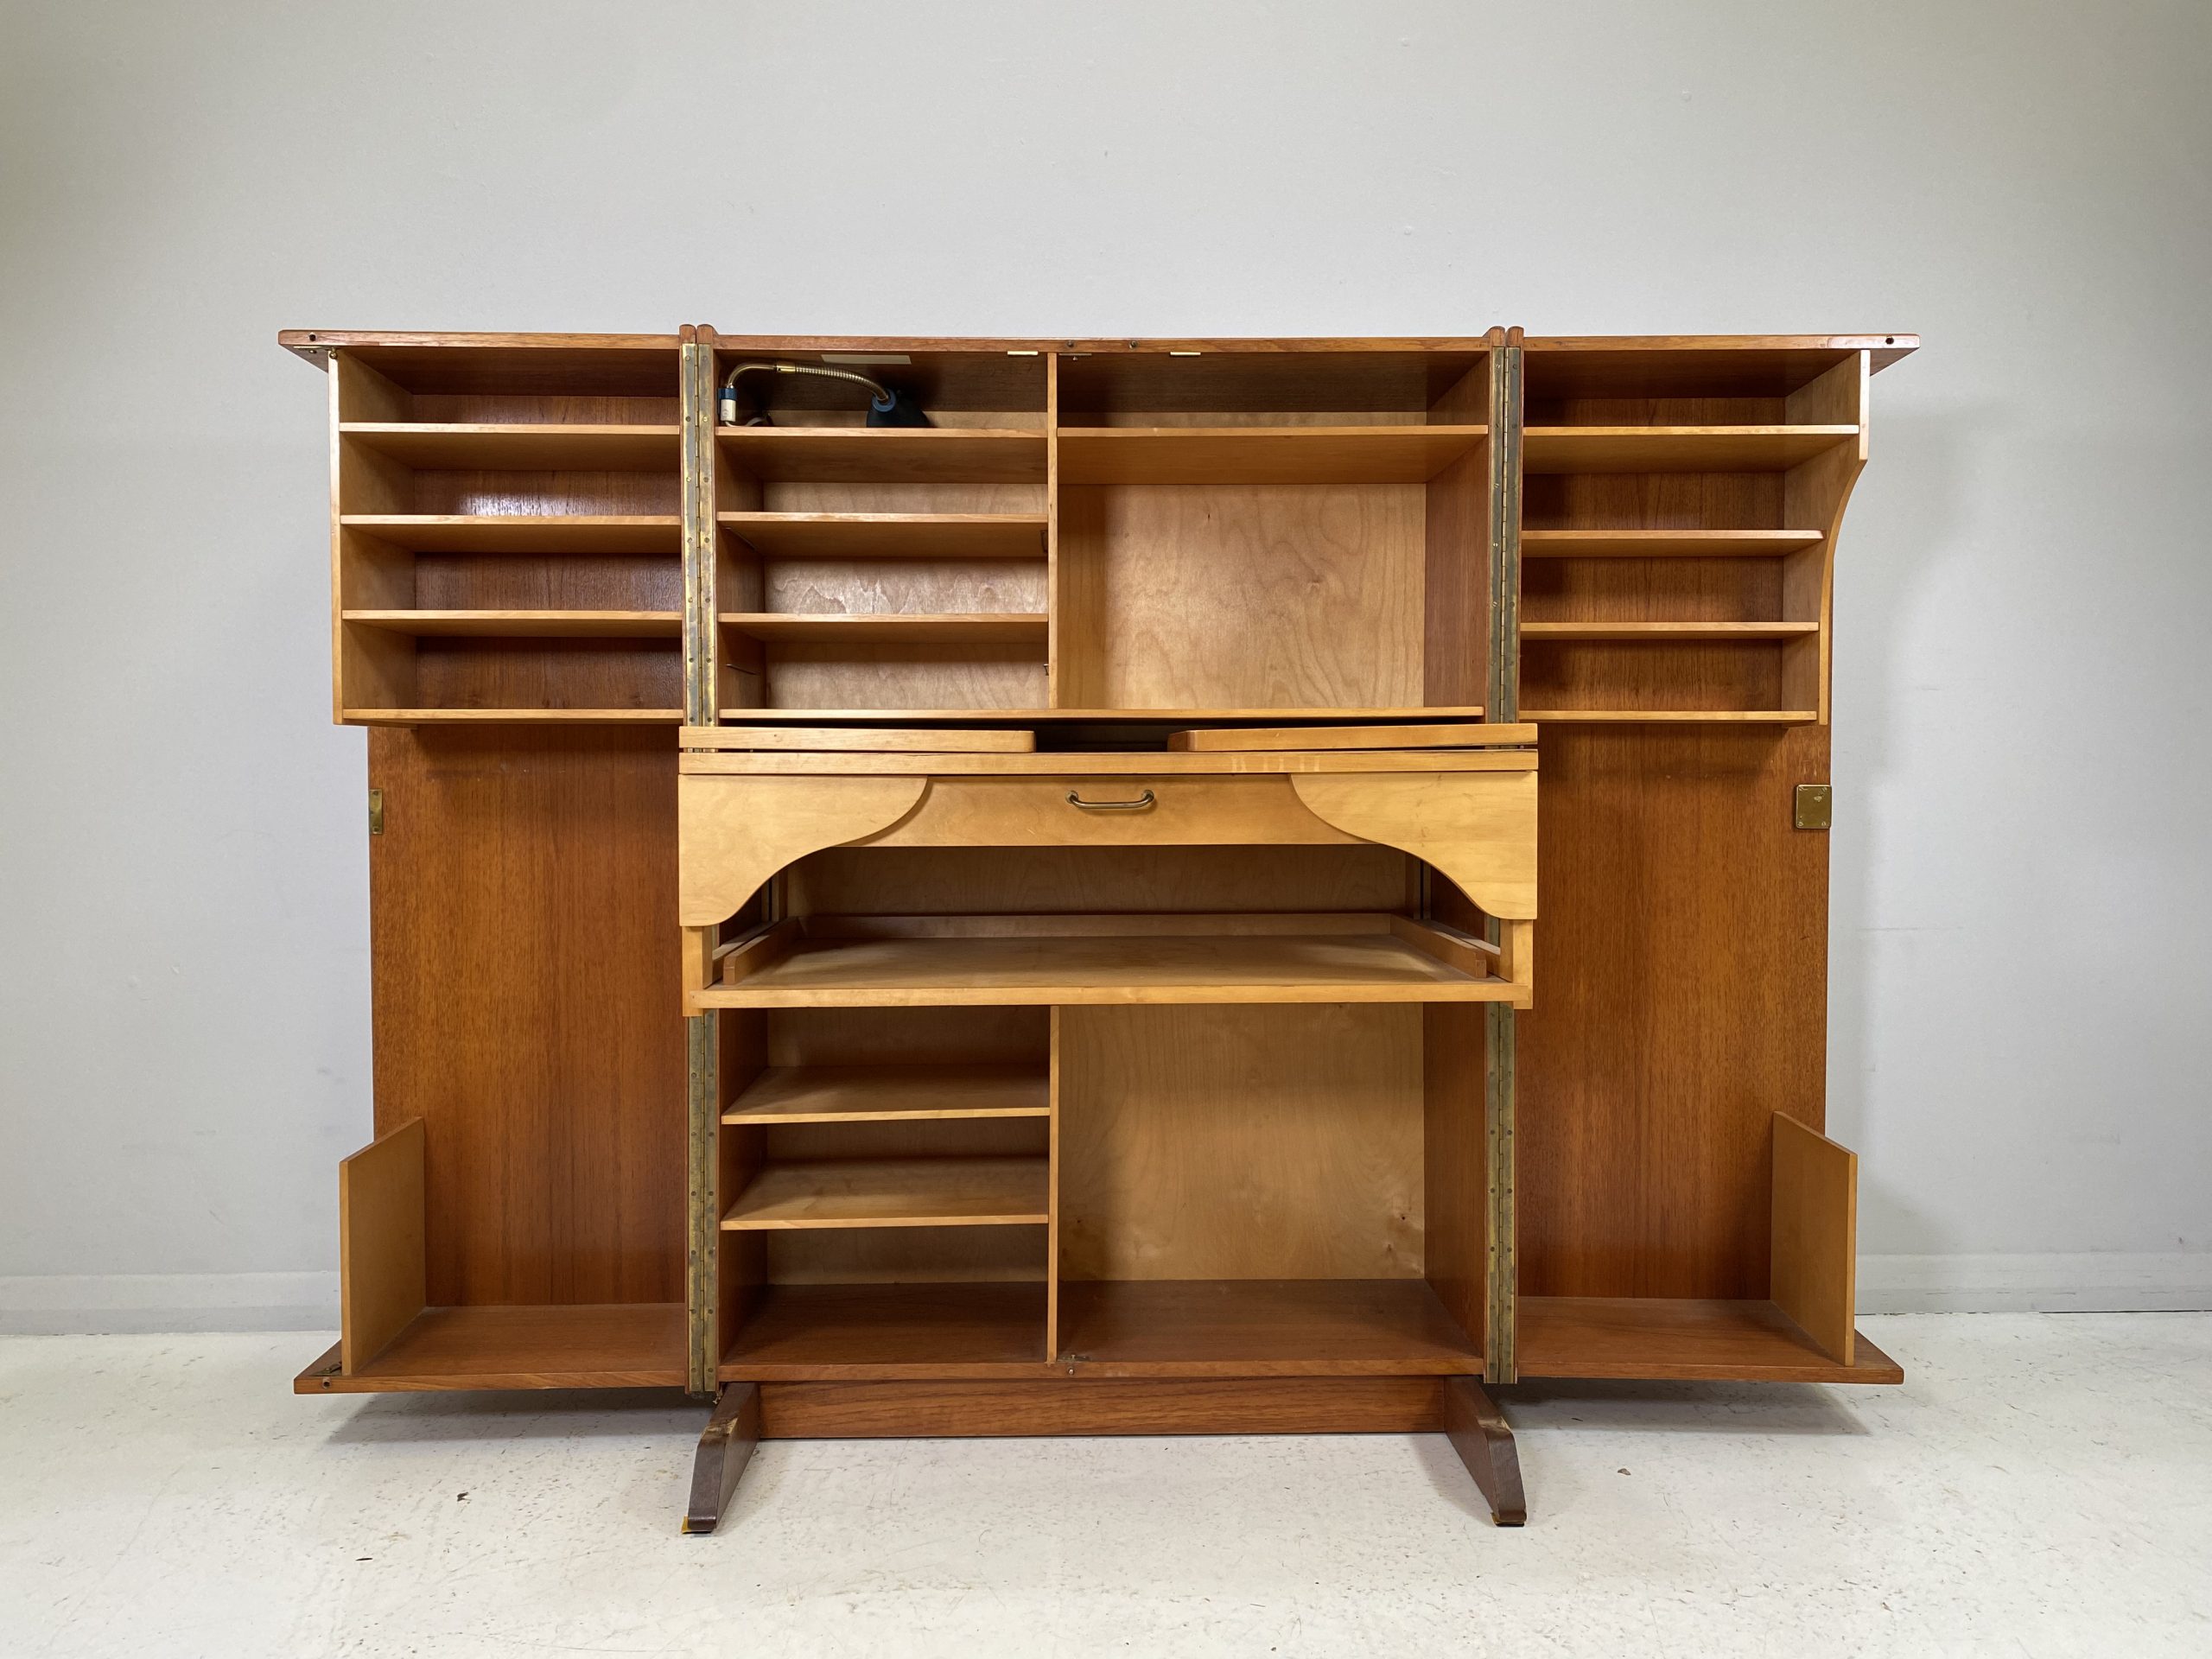 Mummenthaler and Meier 'Magic Box' – Fold Away Desk – I Love That Style